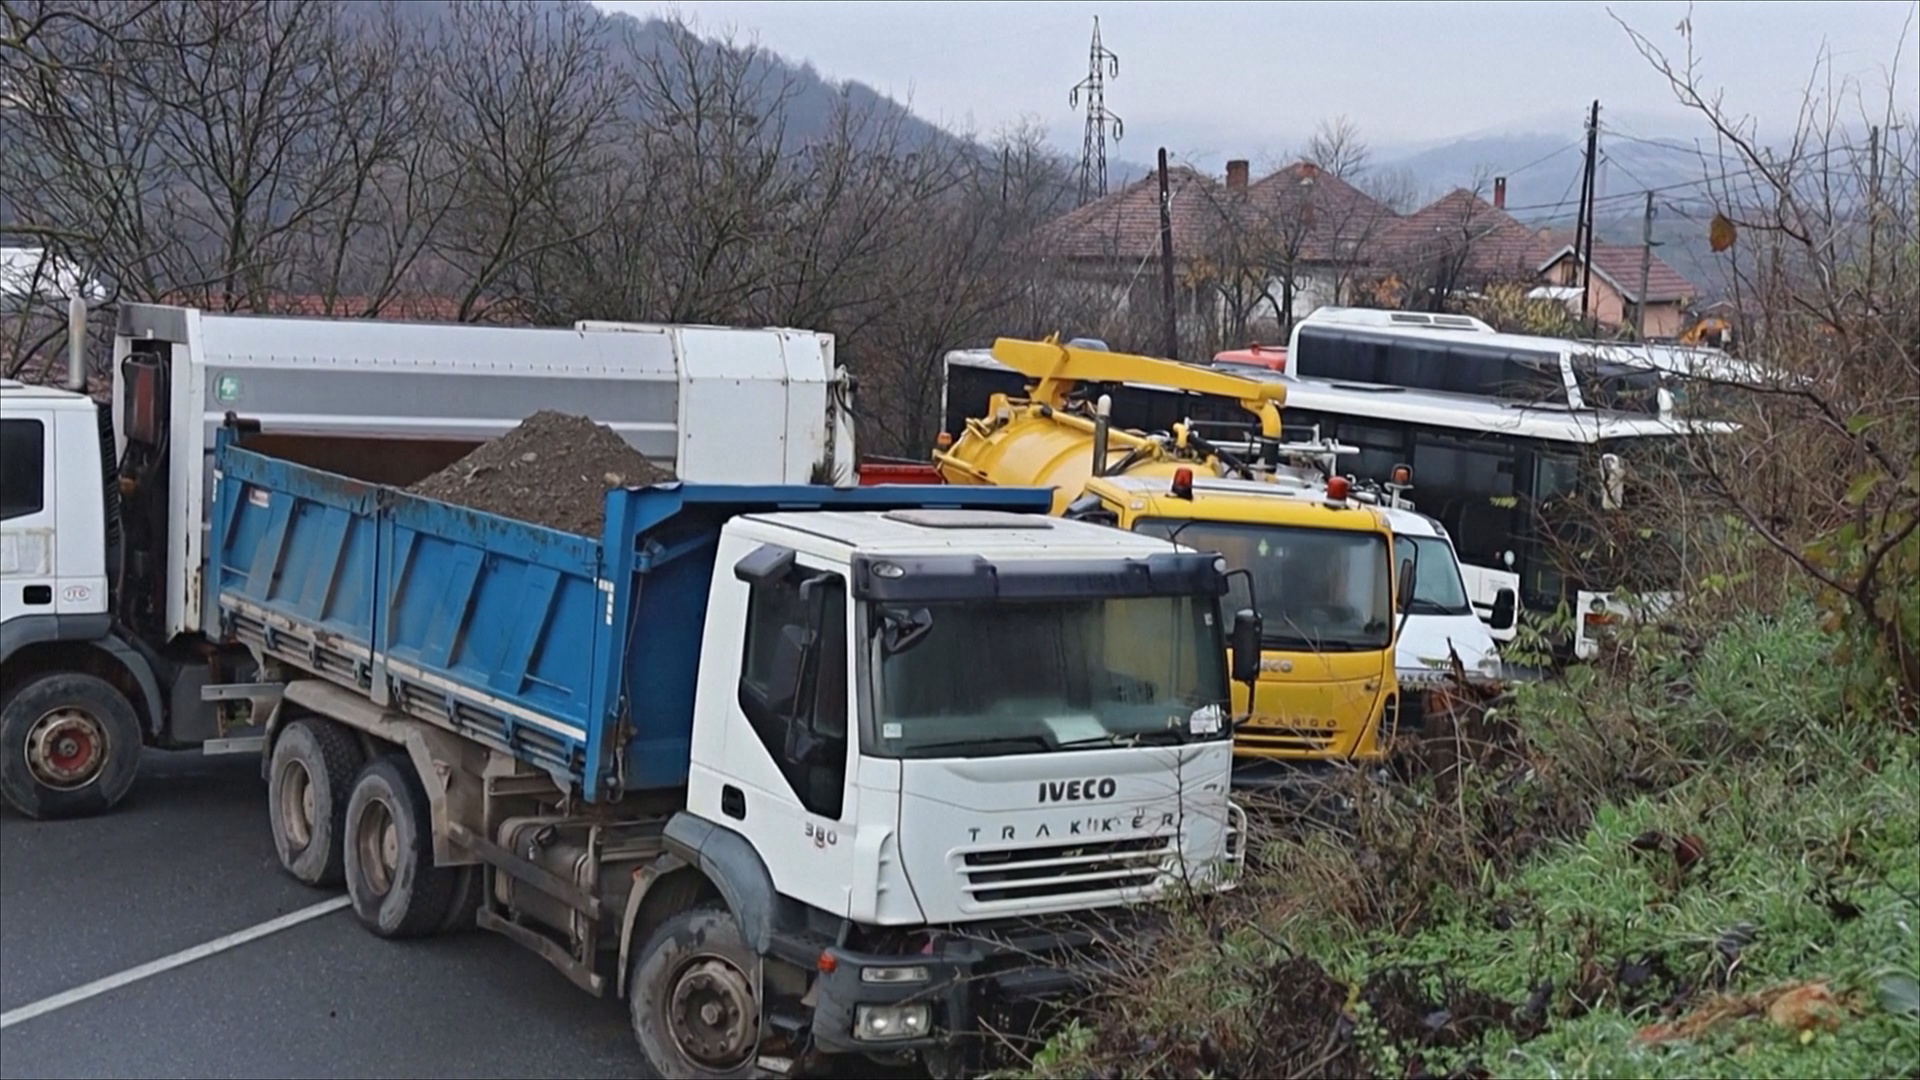 Дороги на севере Косова по-прежнему перекрыты грузовиками